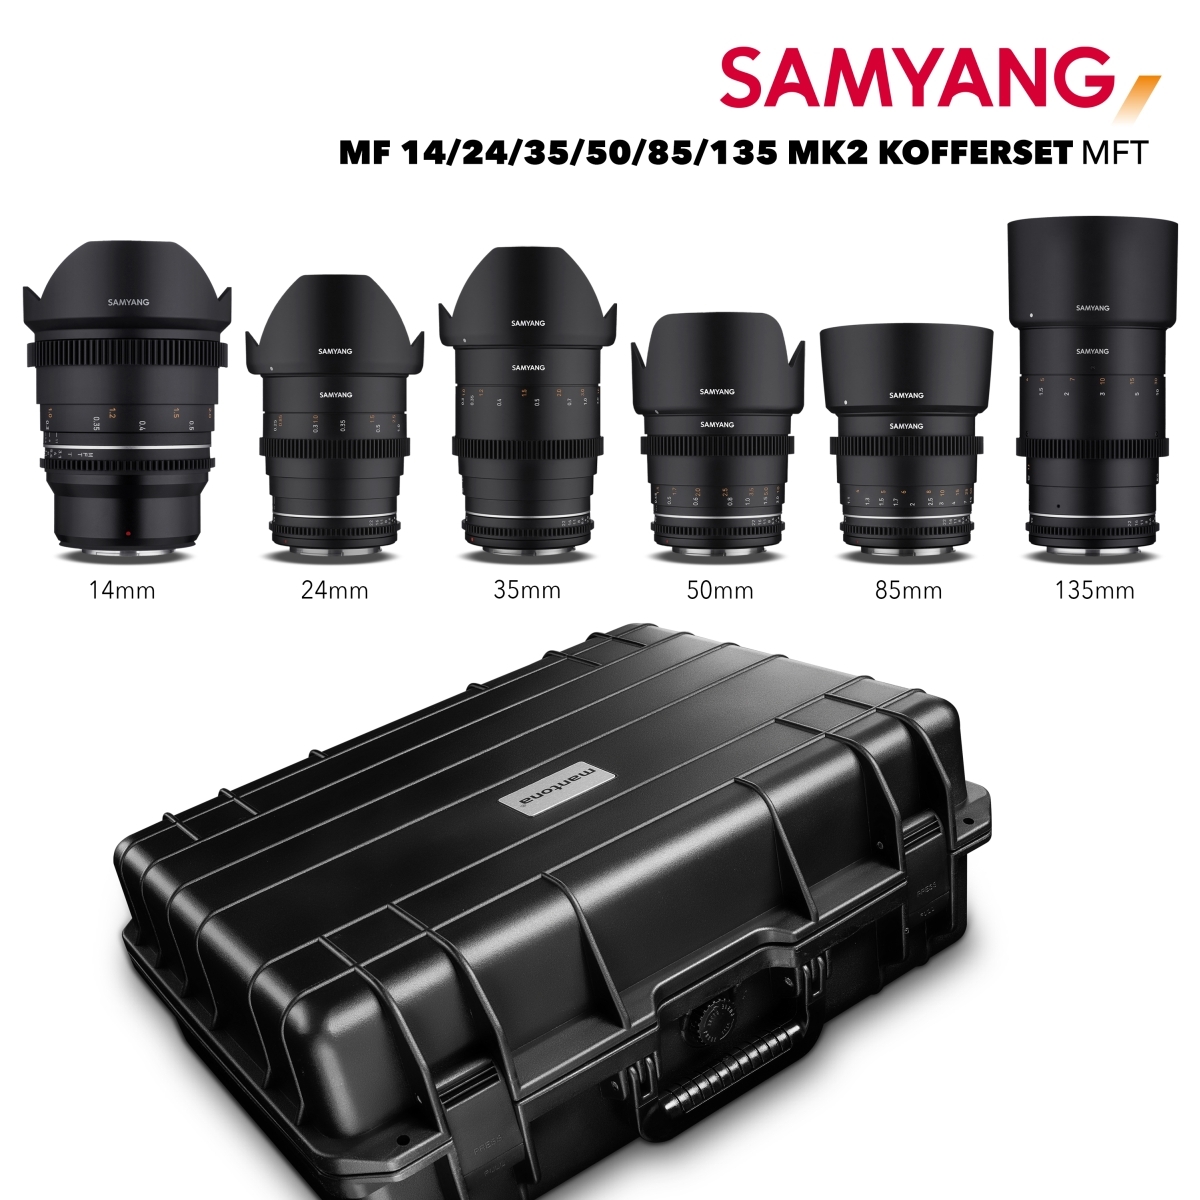 Samyang MF 14/24/35/50/85/135 MK2 Set MFT